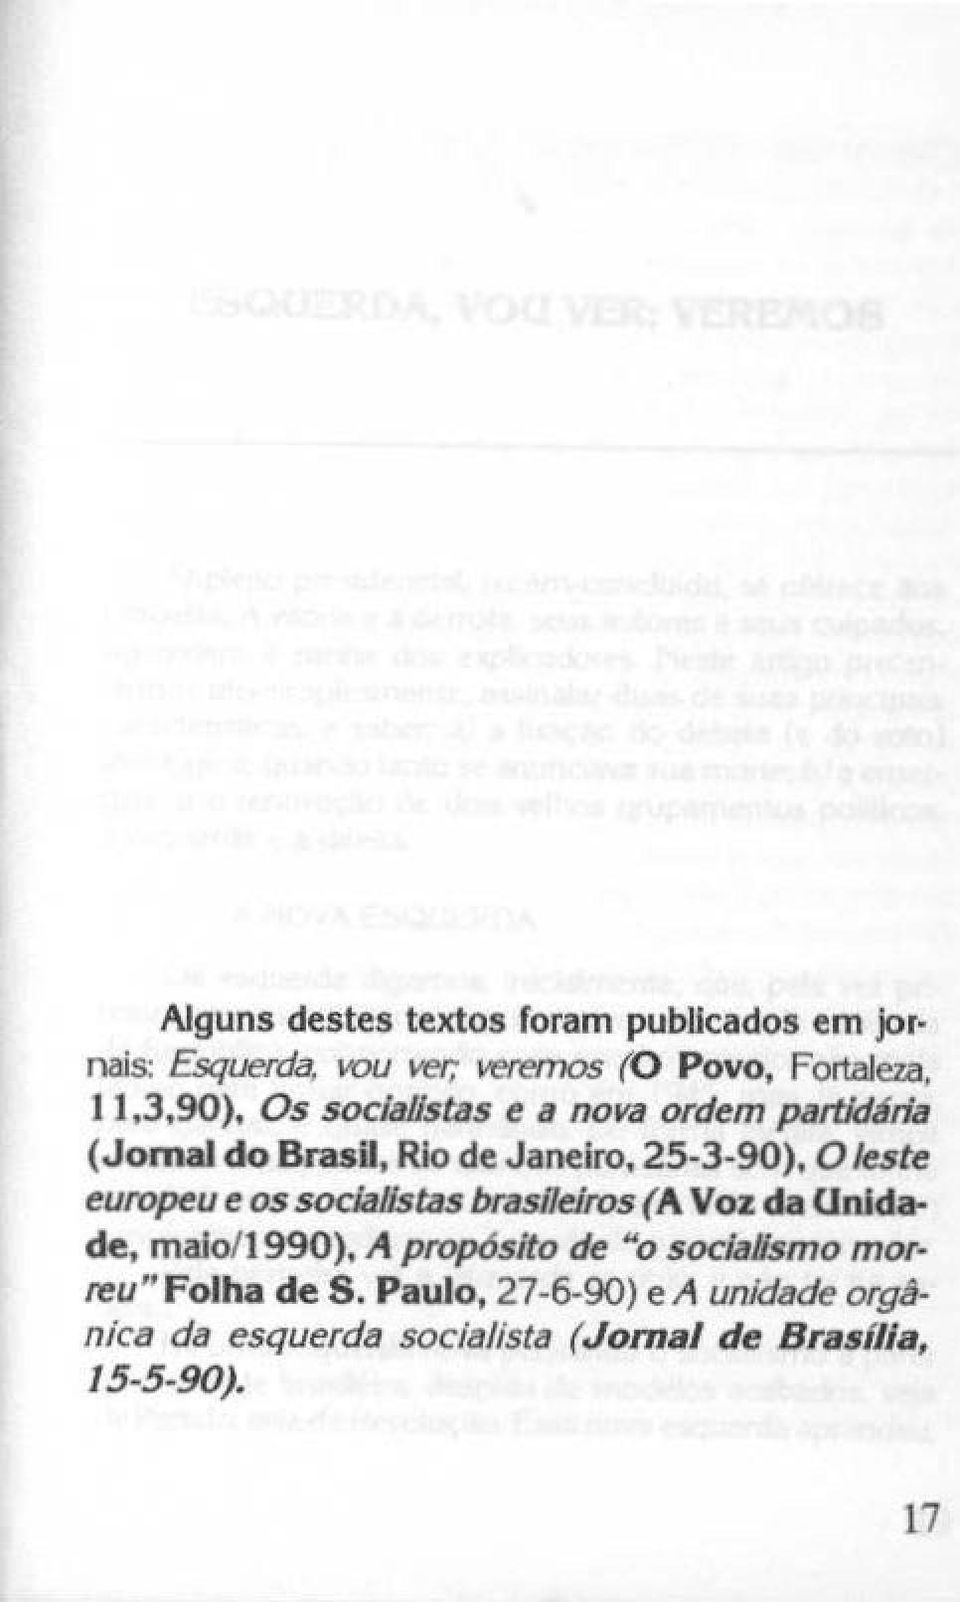 europeu e os socjallstas brasllekos ( A Voz da Unidade, malo/1990), A prop6sito de "o socialsmo mor